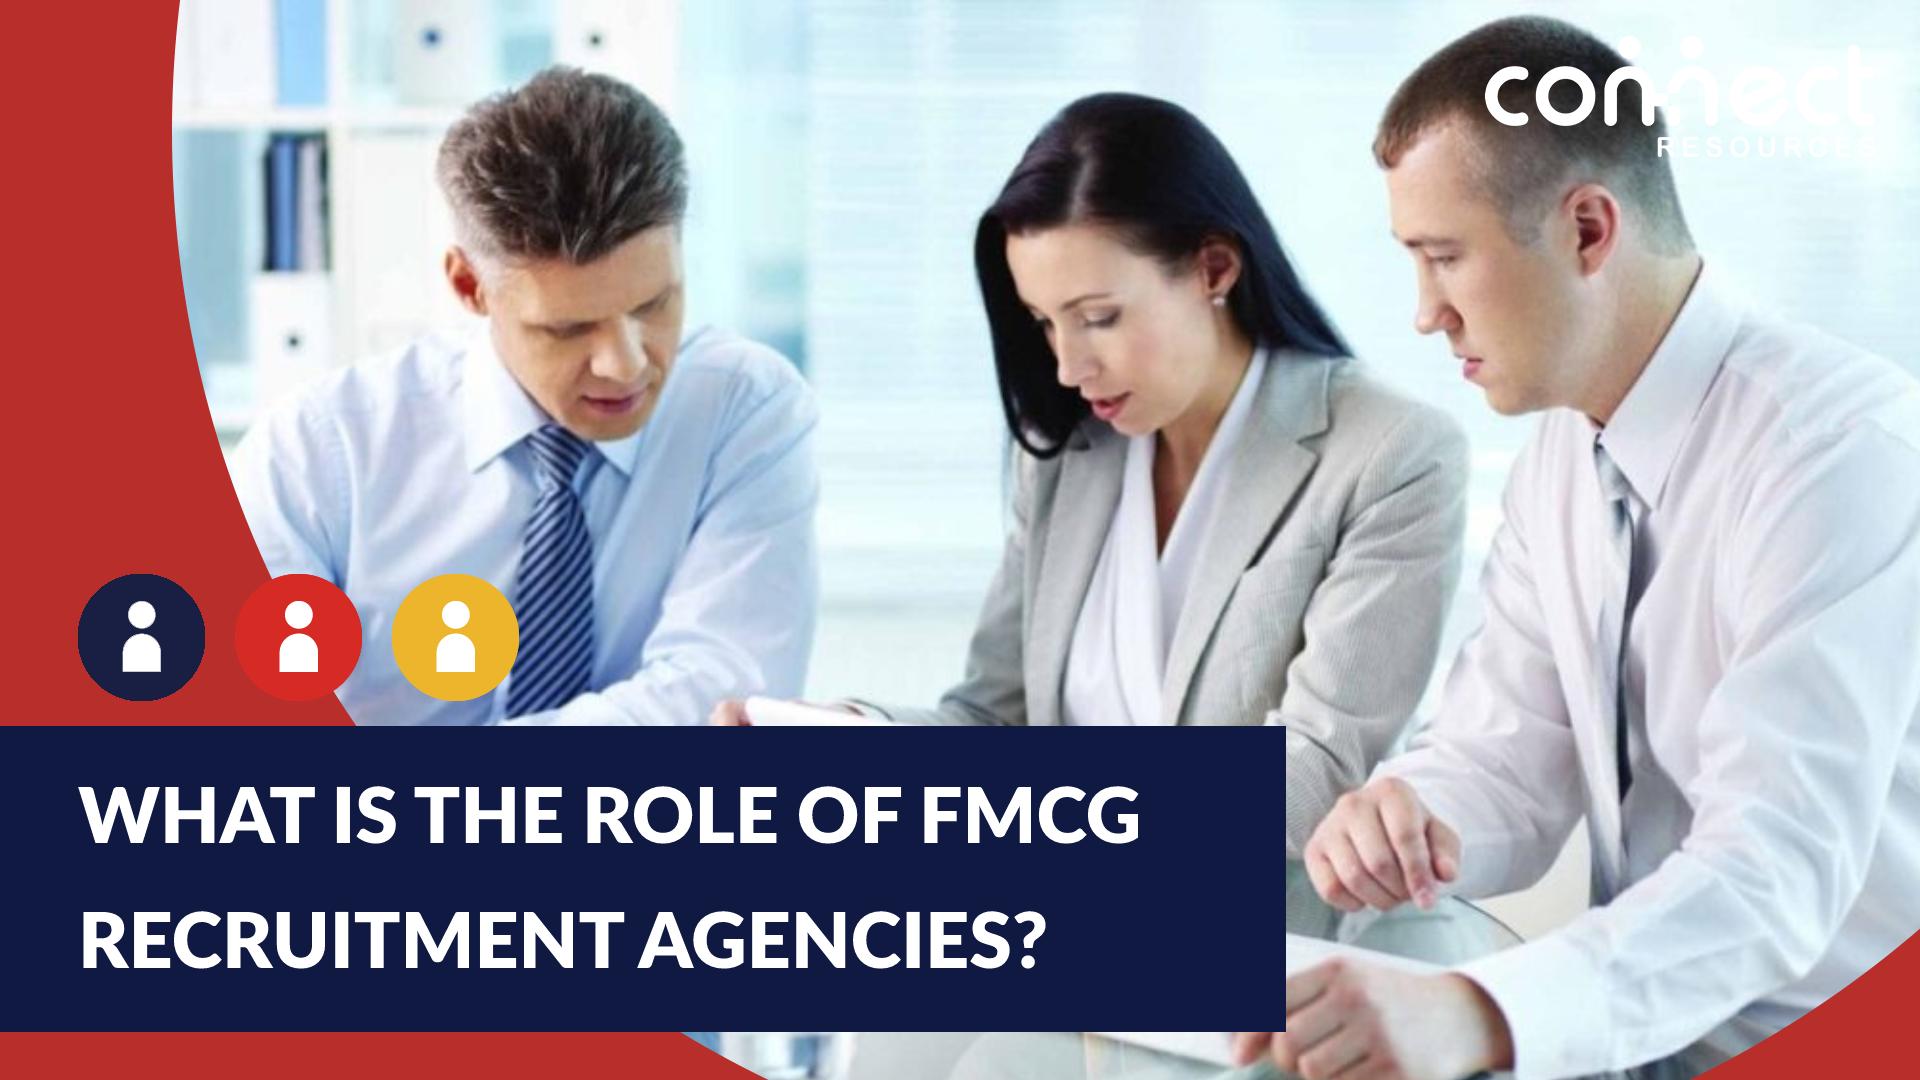 FMCG recruitment